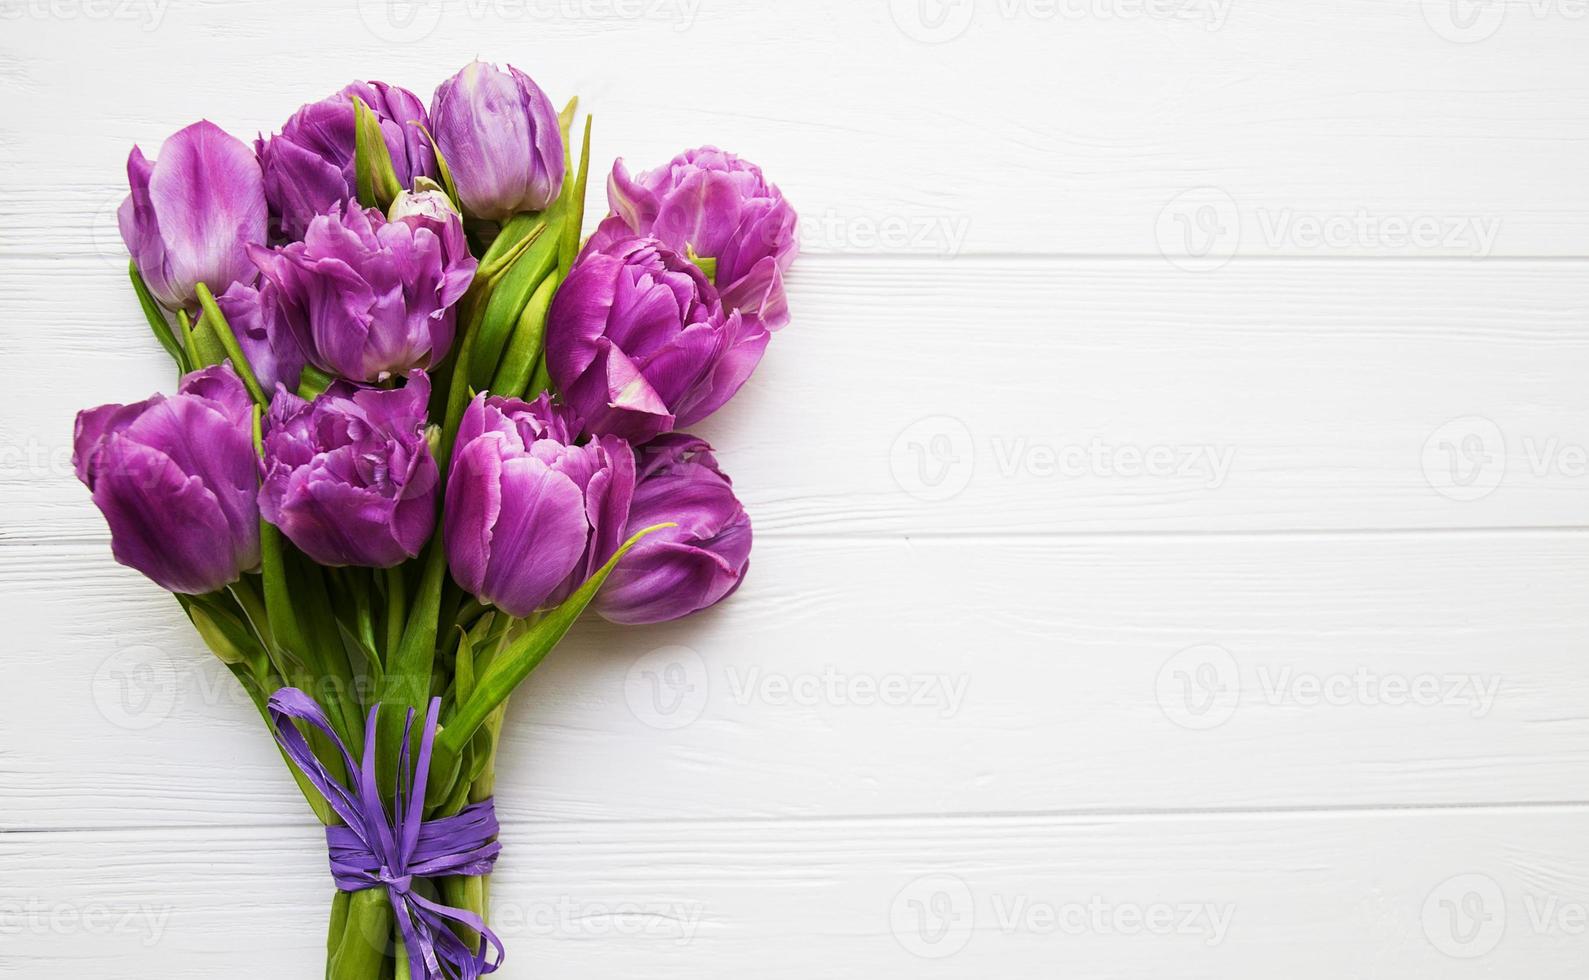 flores de tulipanes de primavera foto